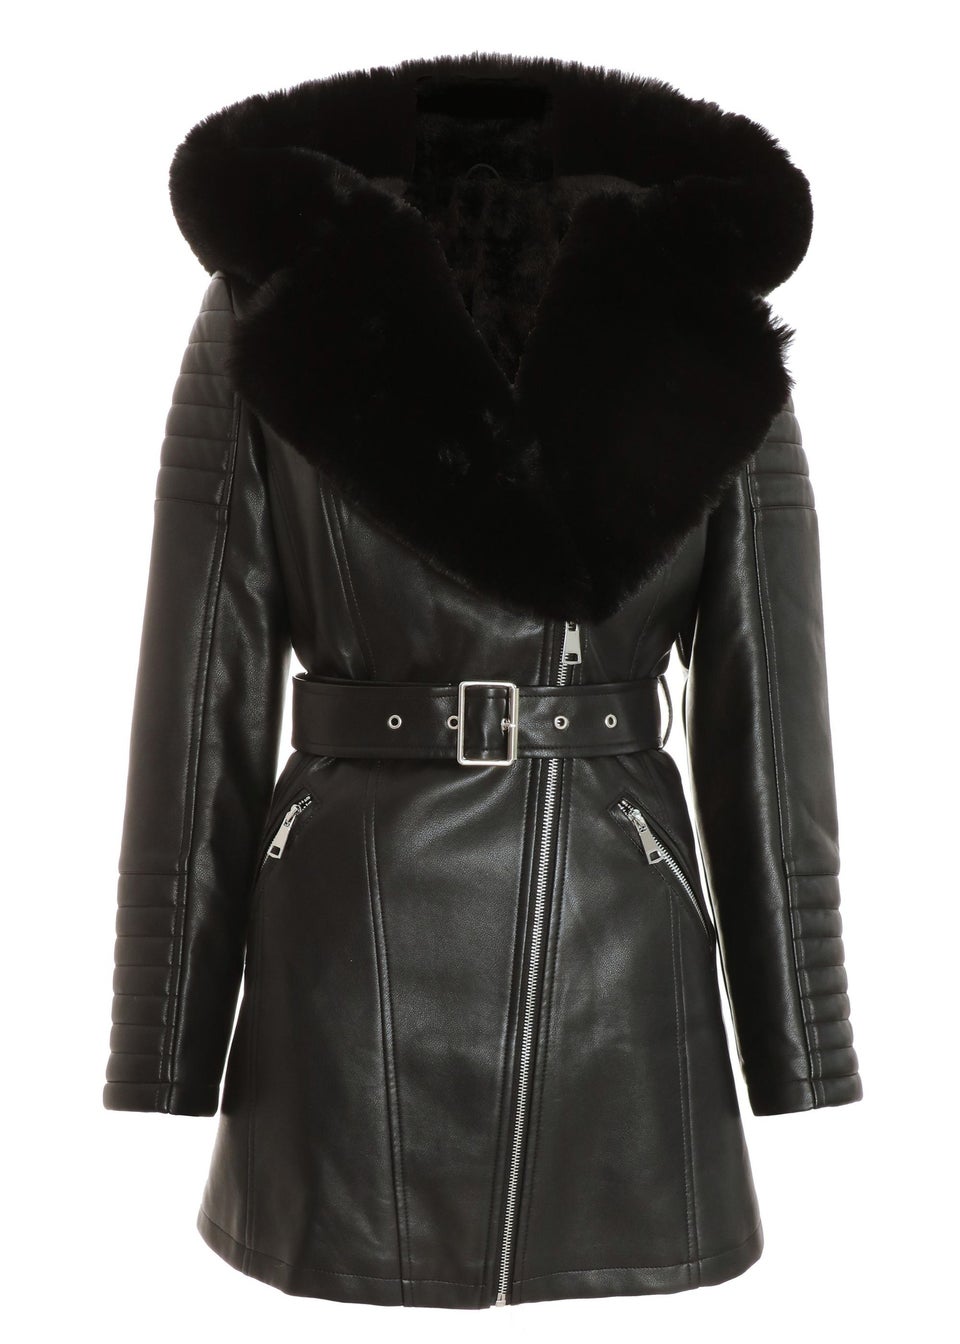 Quiz Black Faux Fur Trim Belted Jacket - Matalan